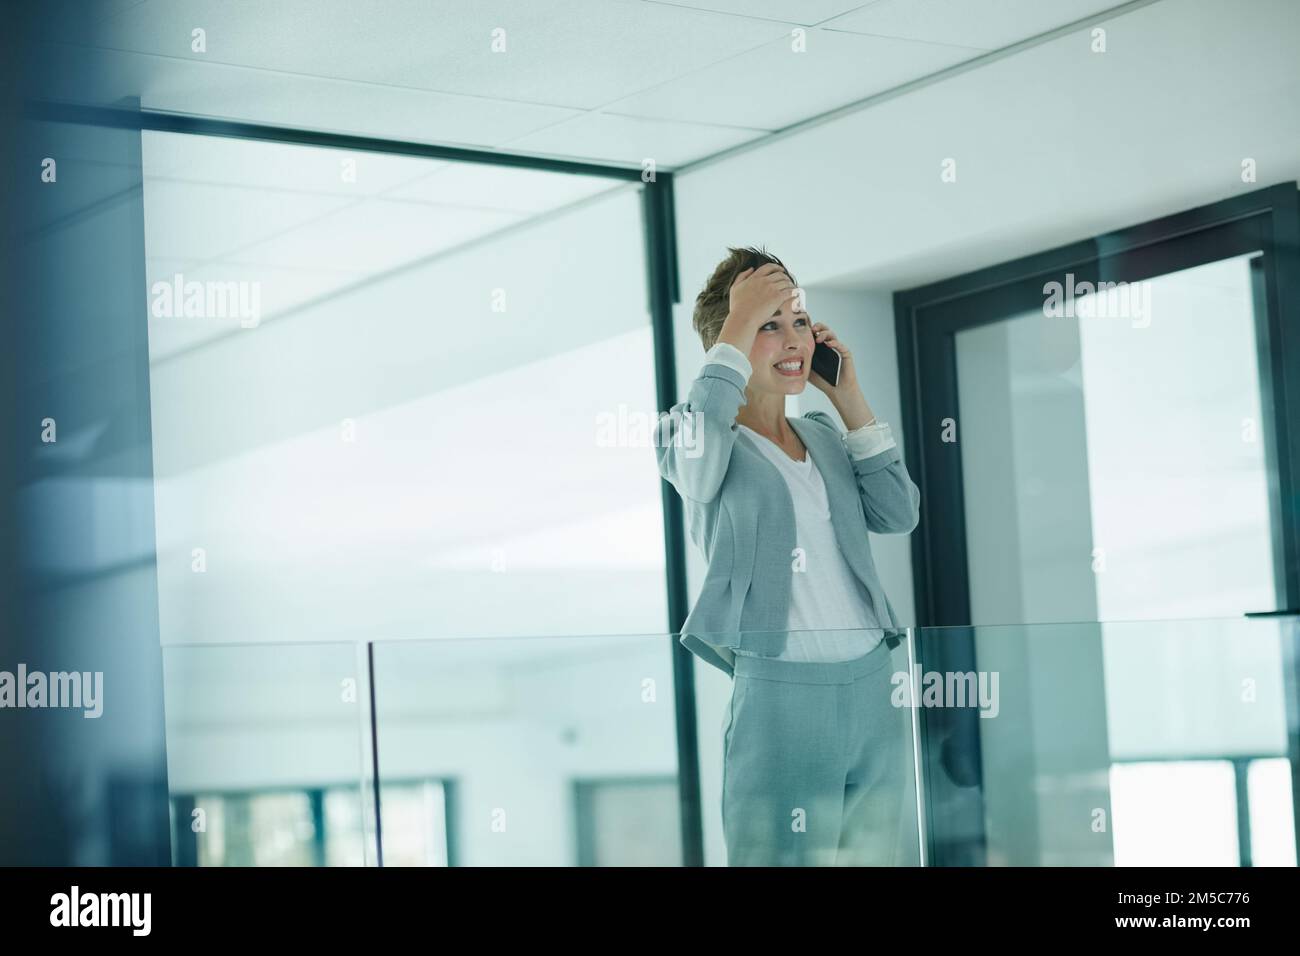 Oh, j'ai complètement oublié. une jeune femme d'affaires qui a l'air inquiète en parlant sur un téléphone portable dans un bureau. Banque D'Images